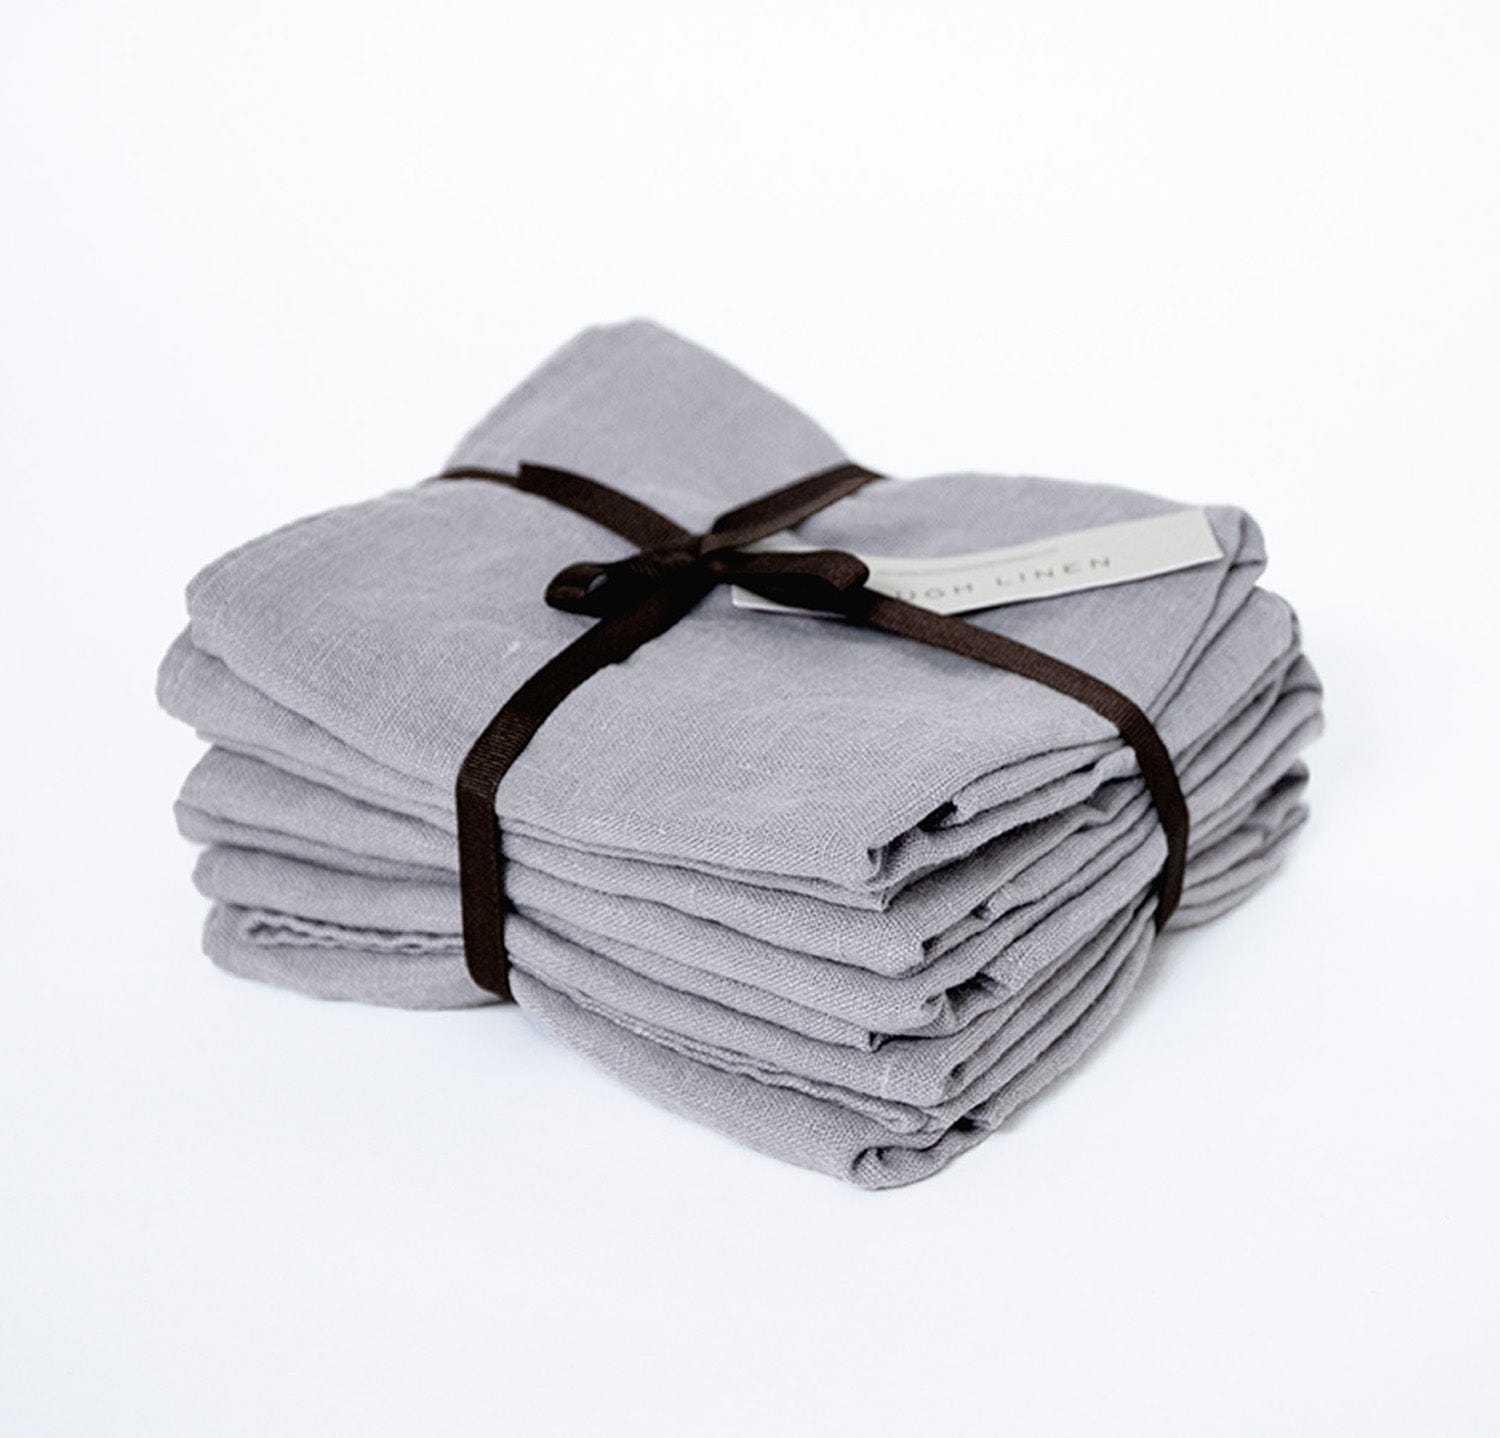 Smoke Gray Kitchen Towel, Linen Towel With Loop, Linen Tea Towel